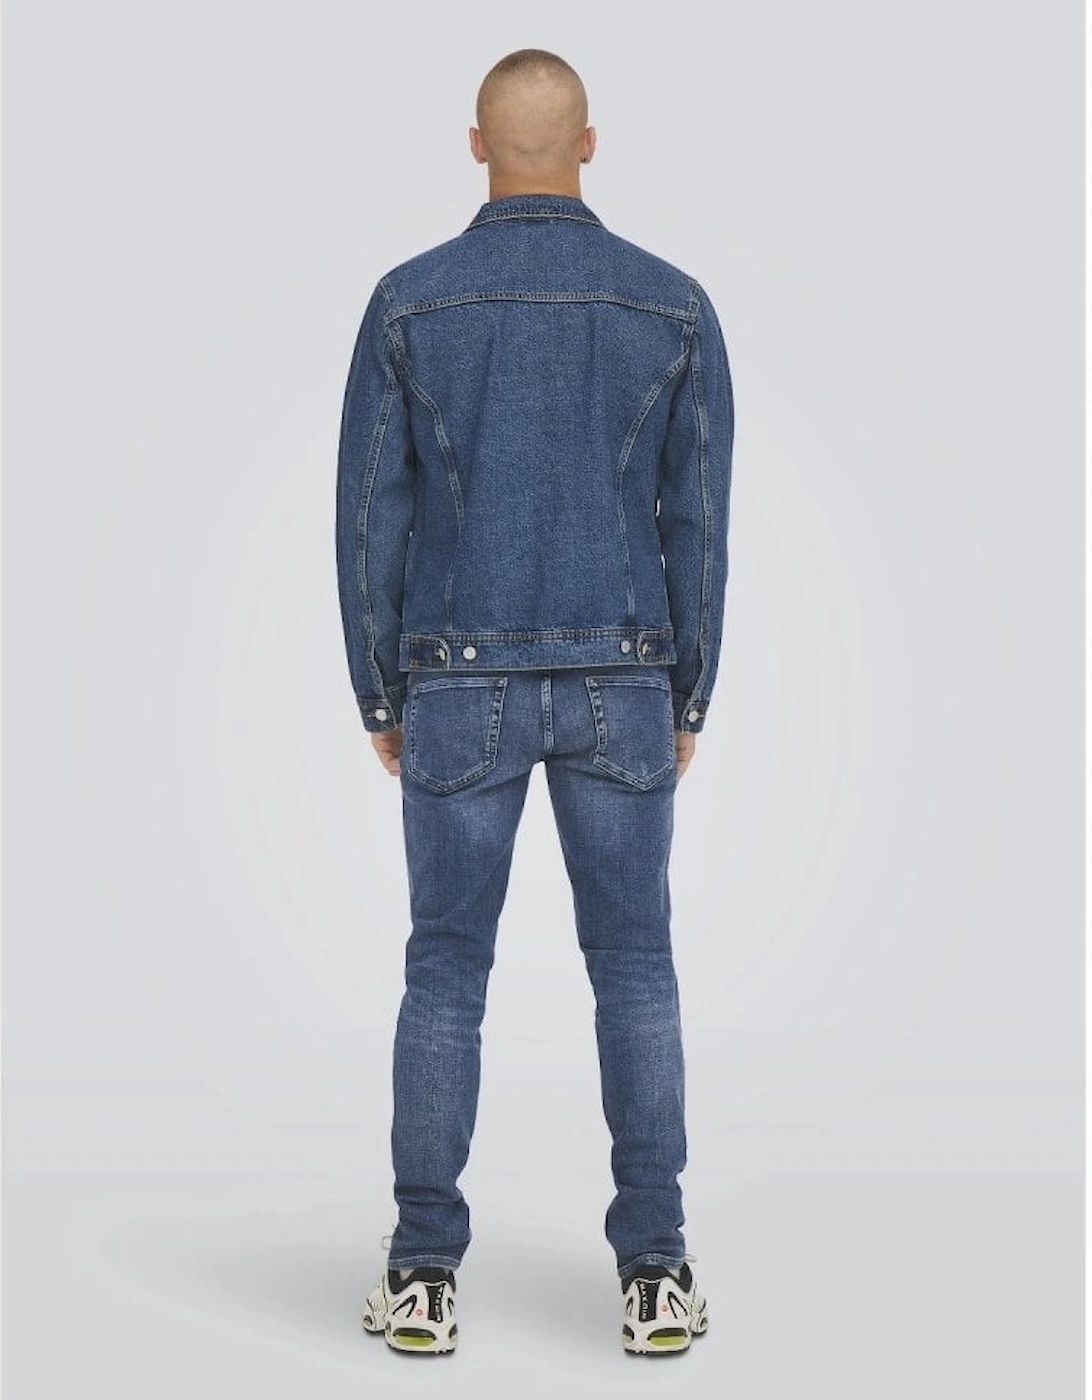 Loom 3292 Slim Fit Jeans - Blue